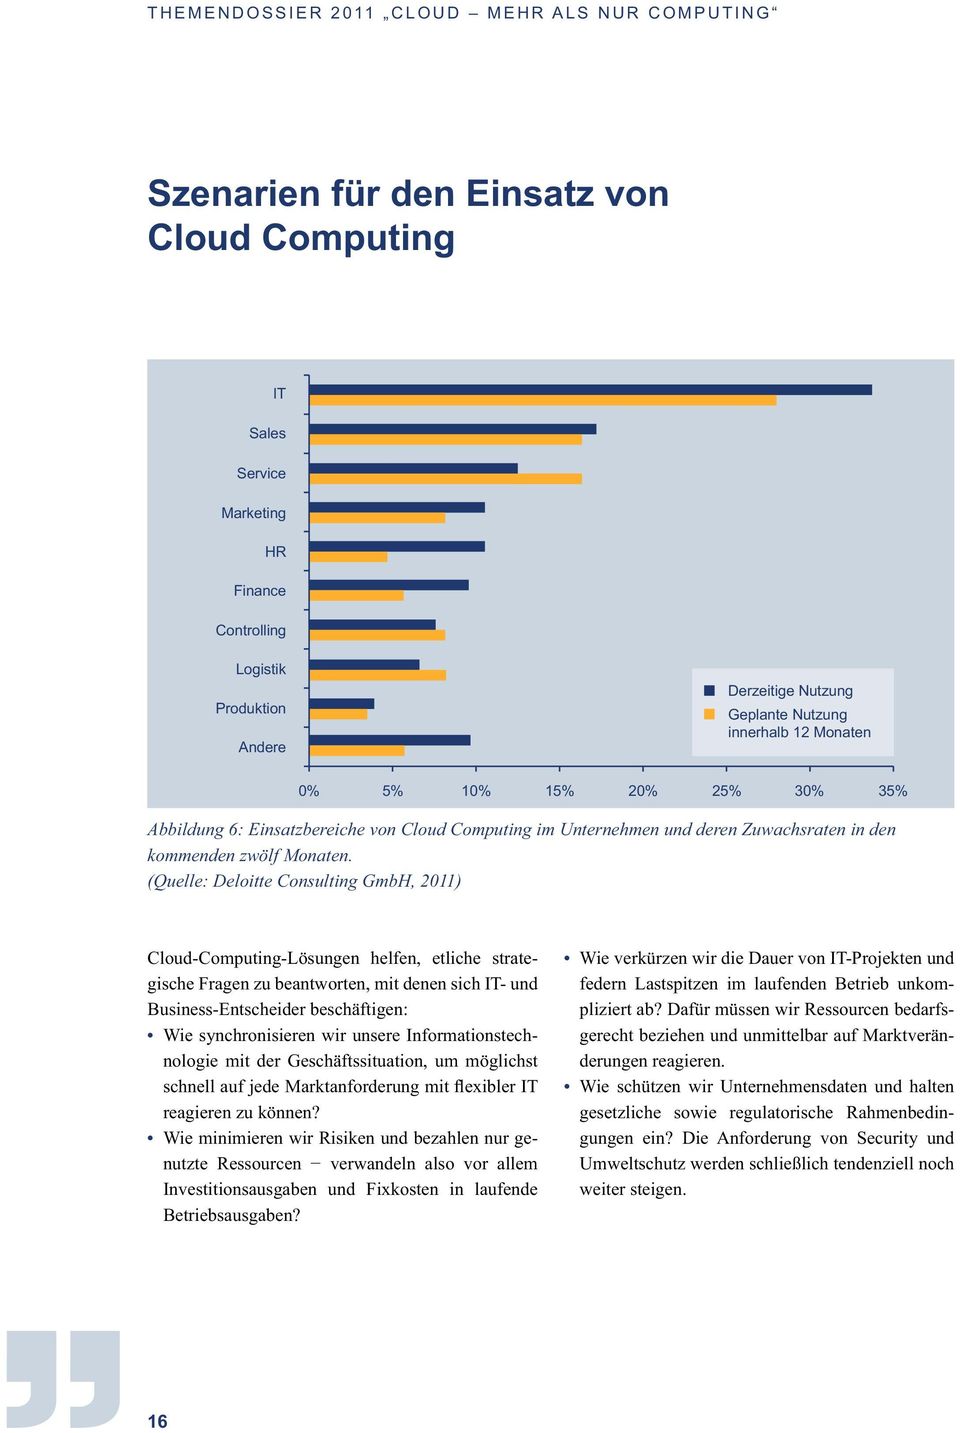 (Quelle: Deloitte Consulting GmbH, 2011) Cloud-Computing-Lösungen helfen, etliche strategische Fragen zu beantworten, mit denen sich IT- und Business-Entscheider beschäftigen: Wie synchronisieren wir